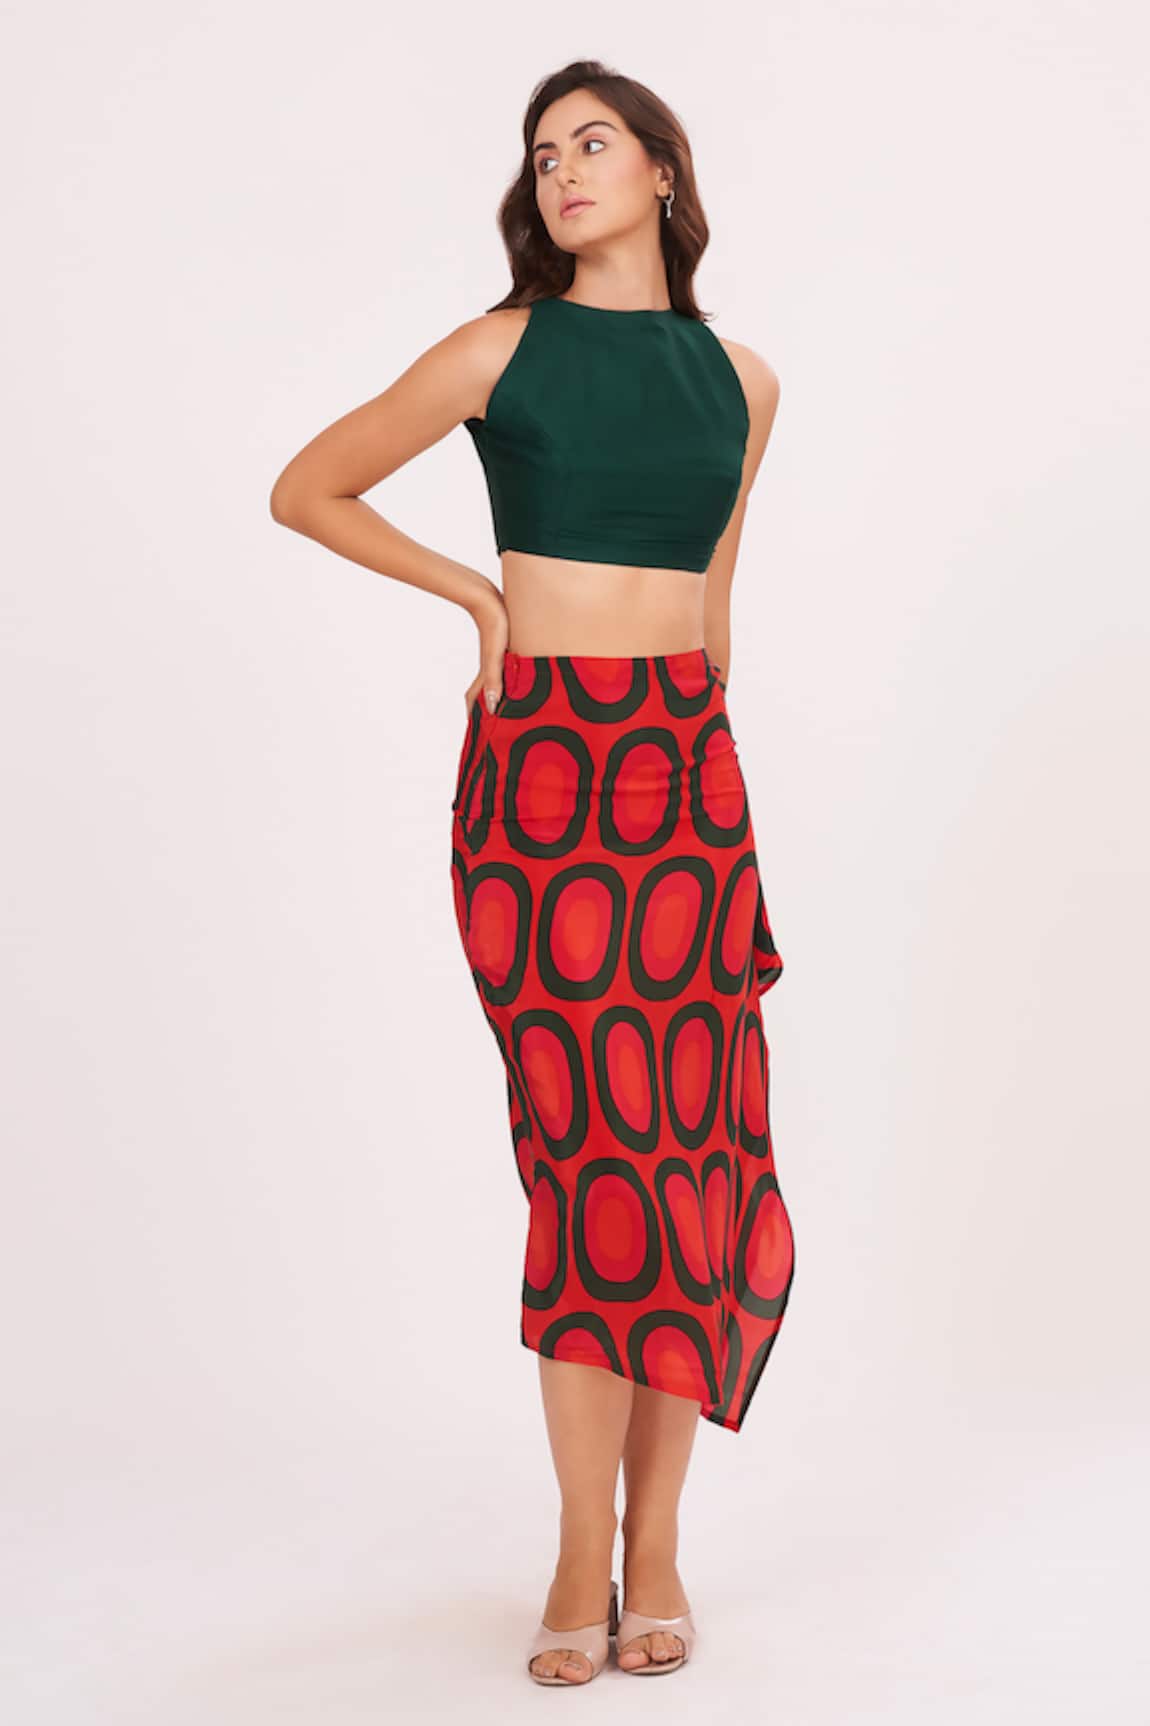 House of Varada Top & Abstract Print Skirt Set